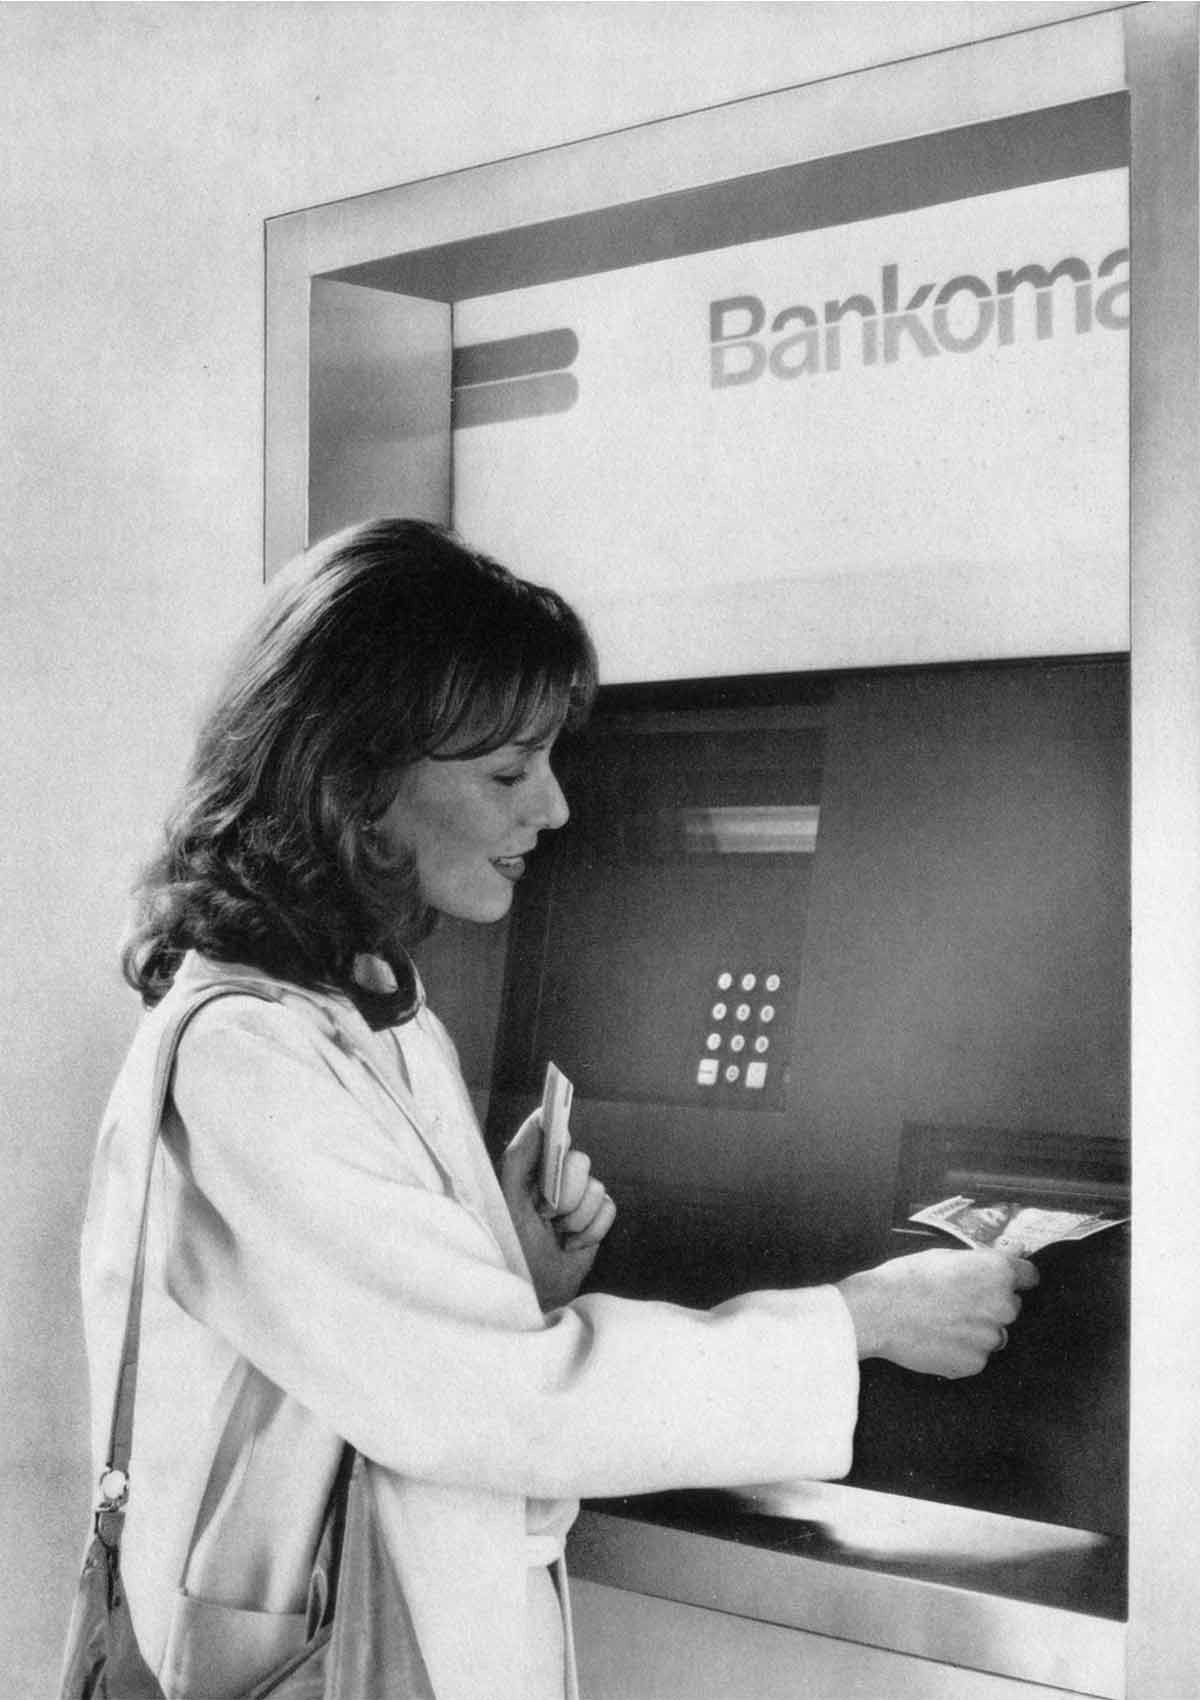 Bankomat im Probebetrieb, Werbebild des Creditanstalt-Bankvereins, 1980: Bankomat im Probebetrieb, Werbebild des Creditanstalt-Bankvereins, 1980